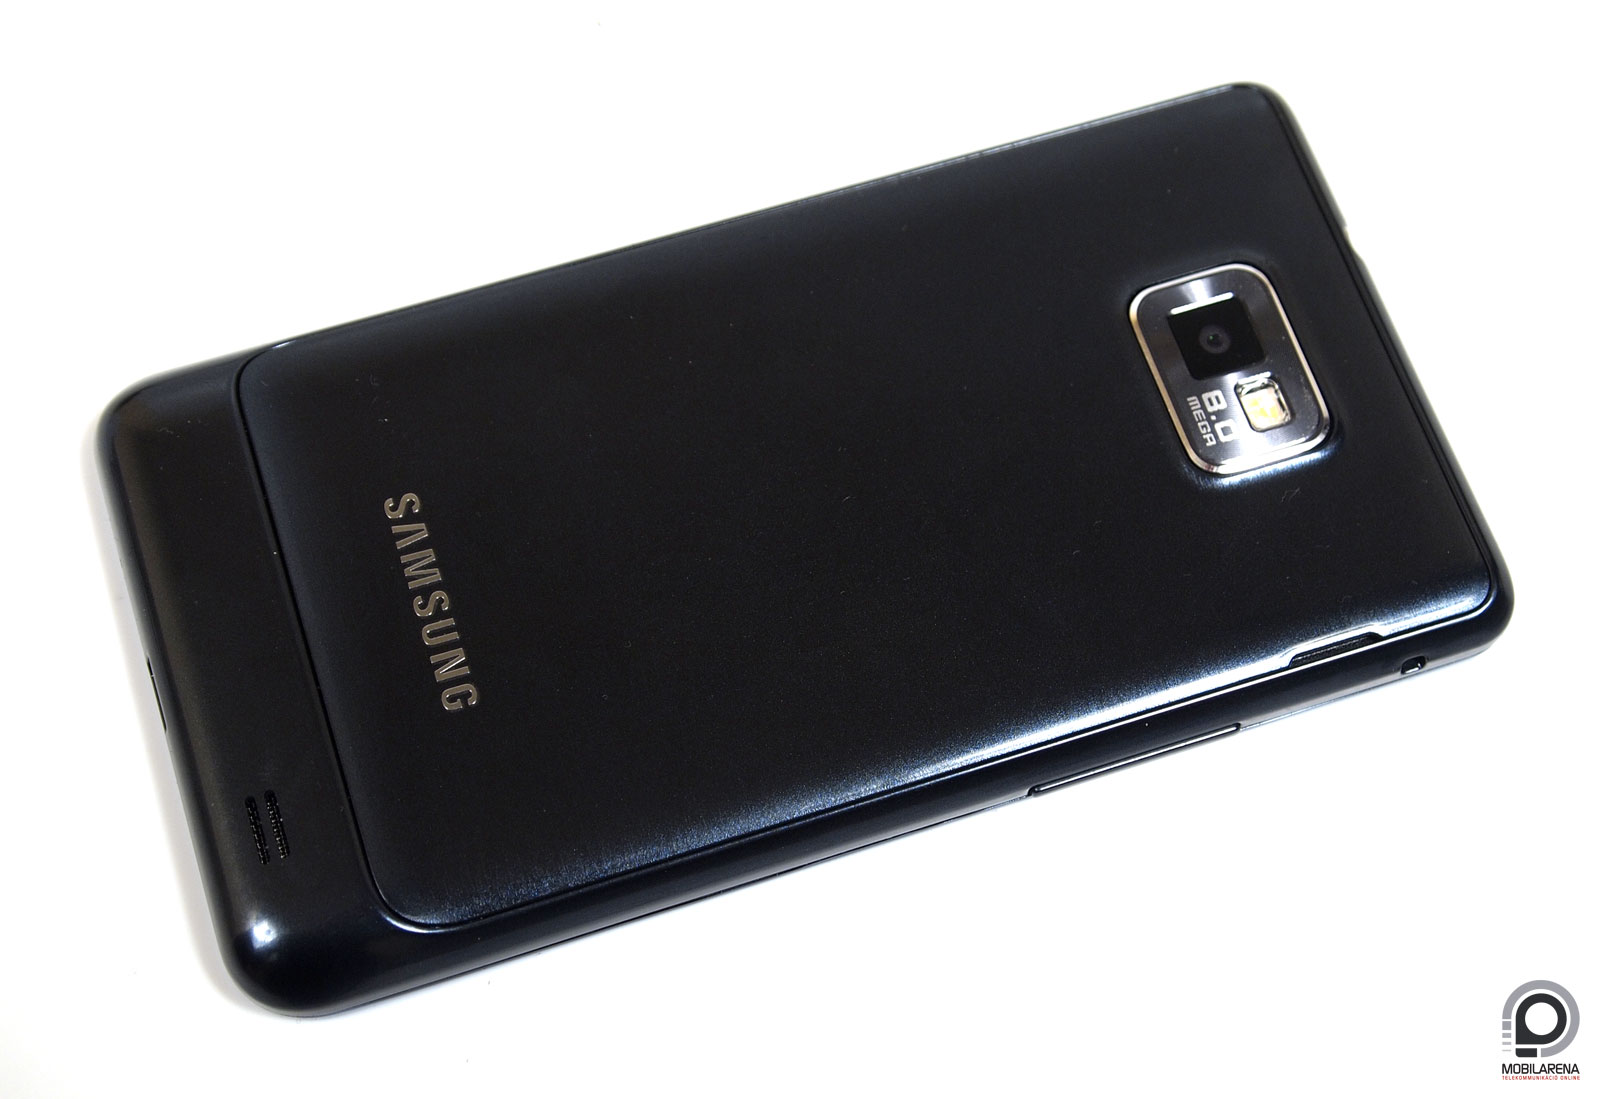 Samsung Galaxy S II Plus - plusz lóvé - Mobilarena Okostelefon teszt -  Nyomtatóbarát verzió